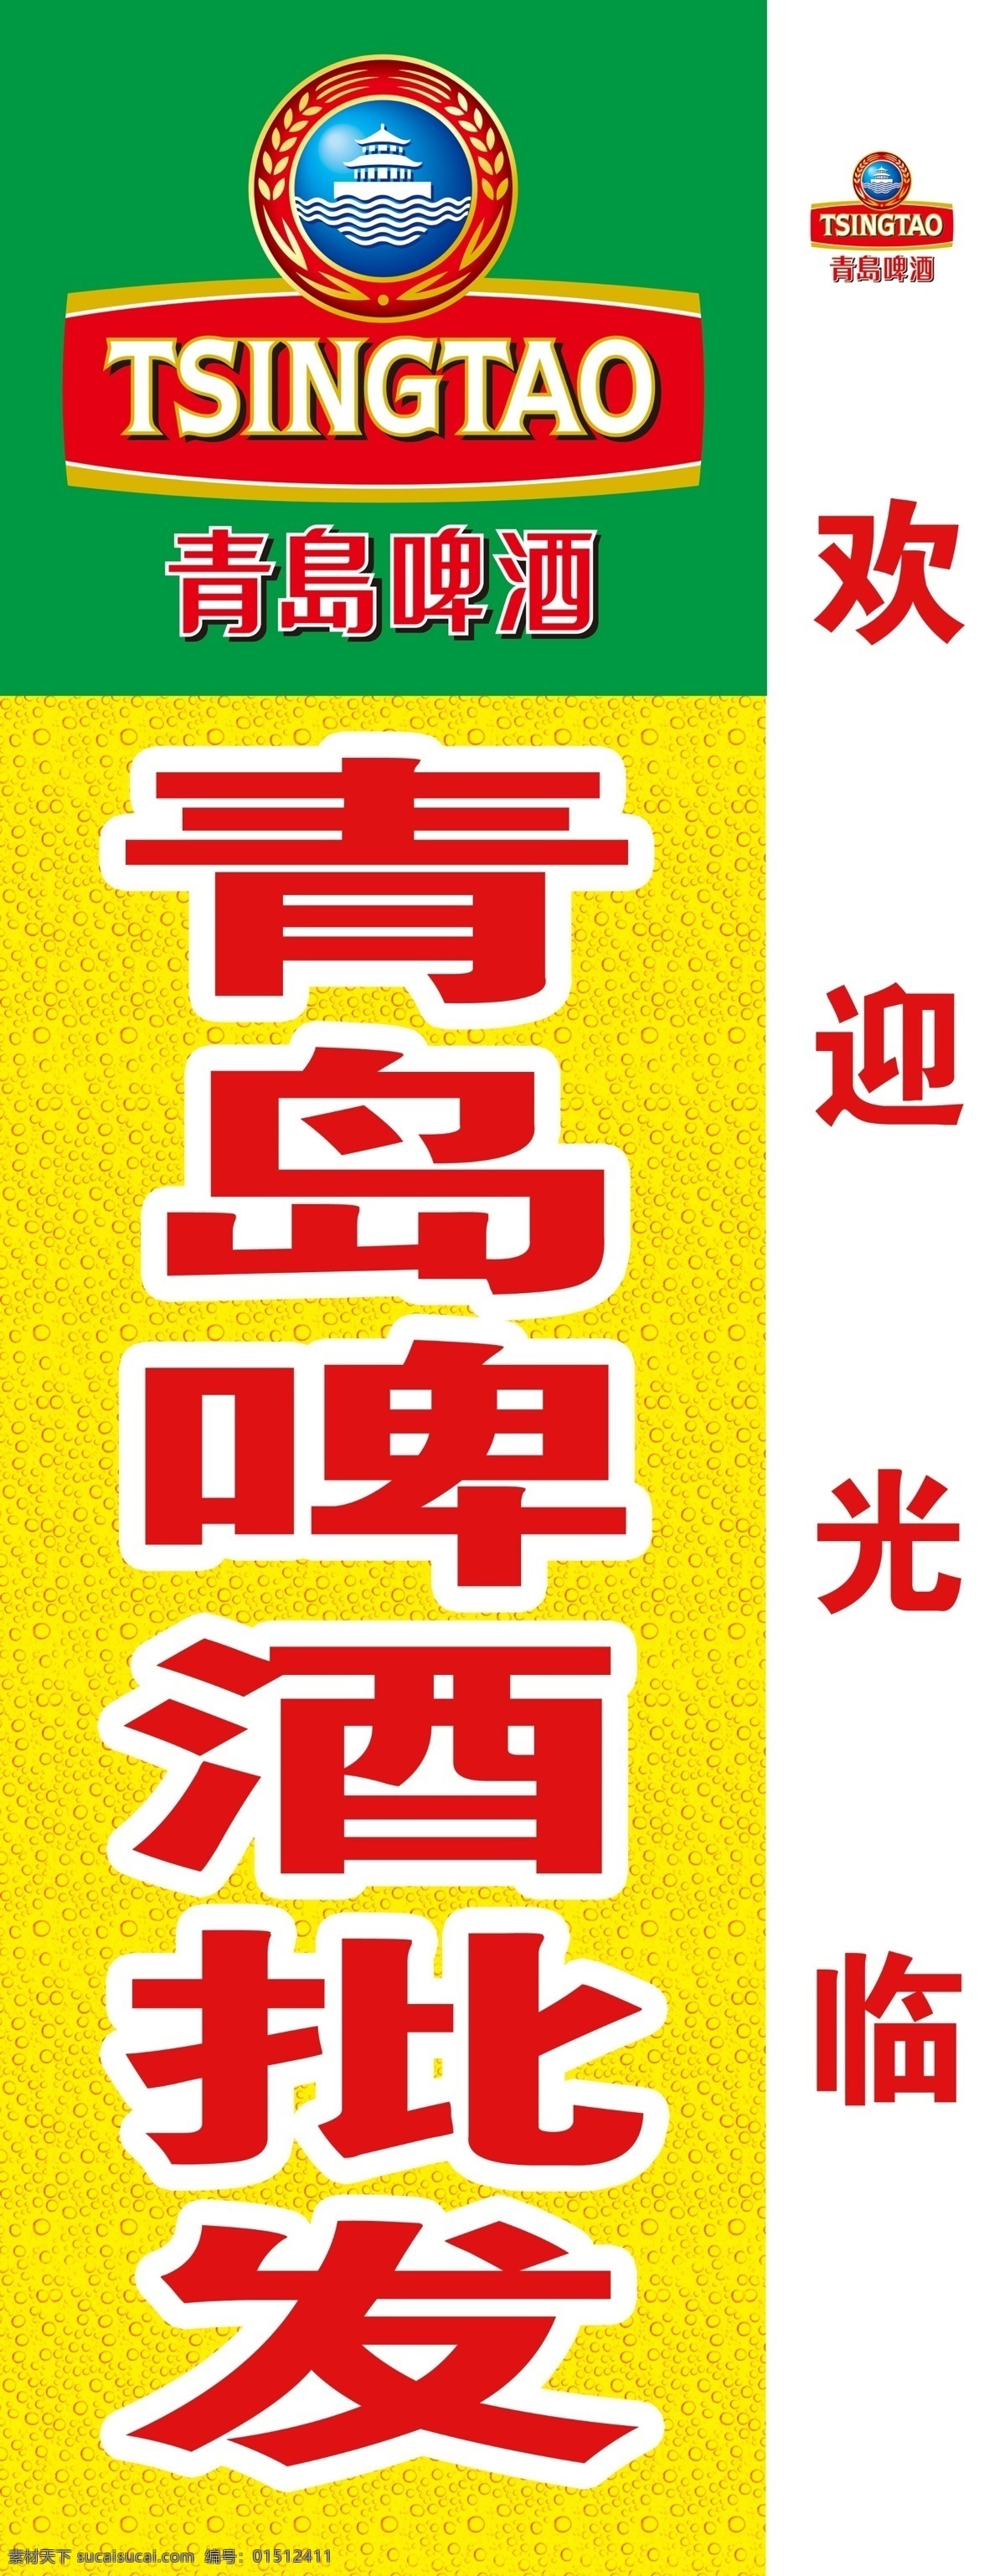 青岛啤酒 招牌 模版 模版下载 青岛啤酒标志 青岛啤酒店标 广告设计模板 源文件 logo设计